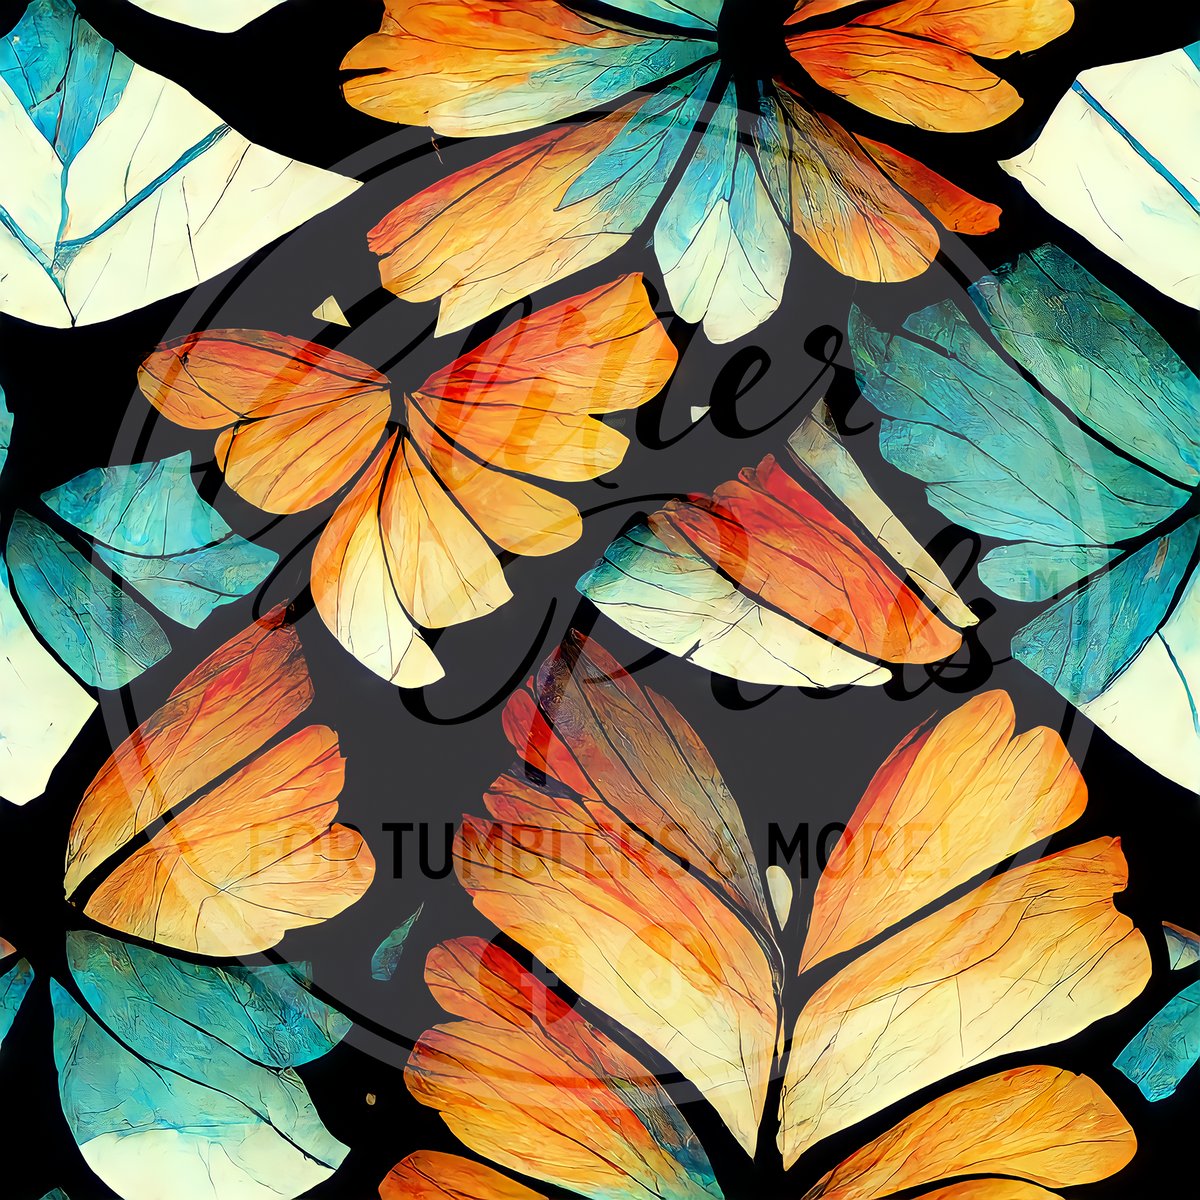 Butterfly Wings 1